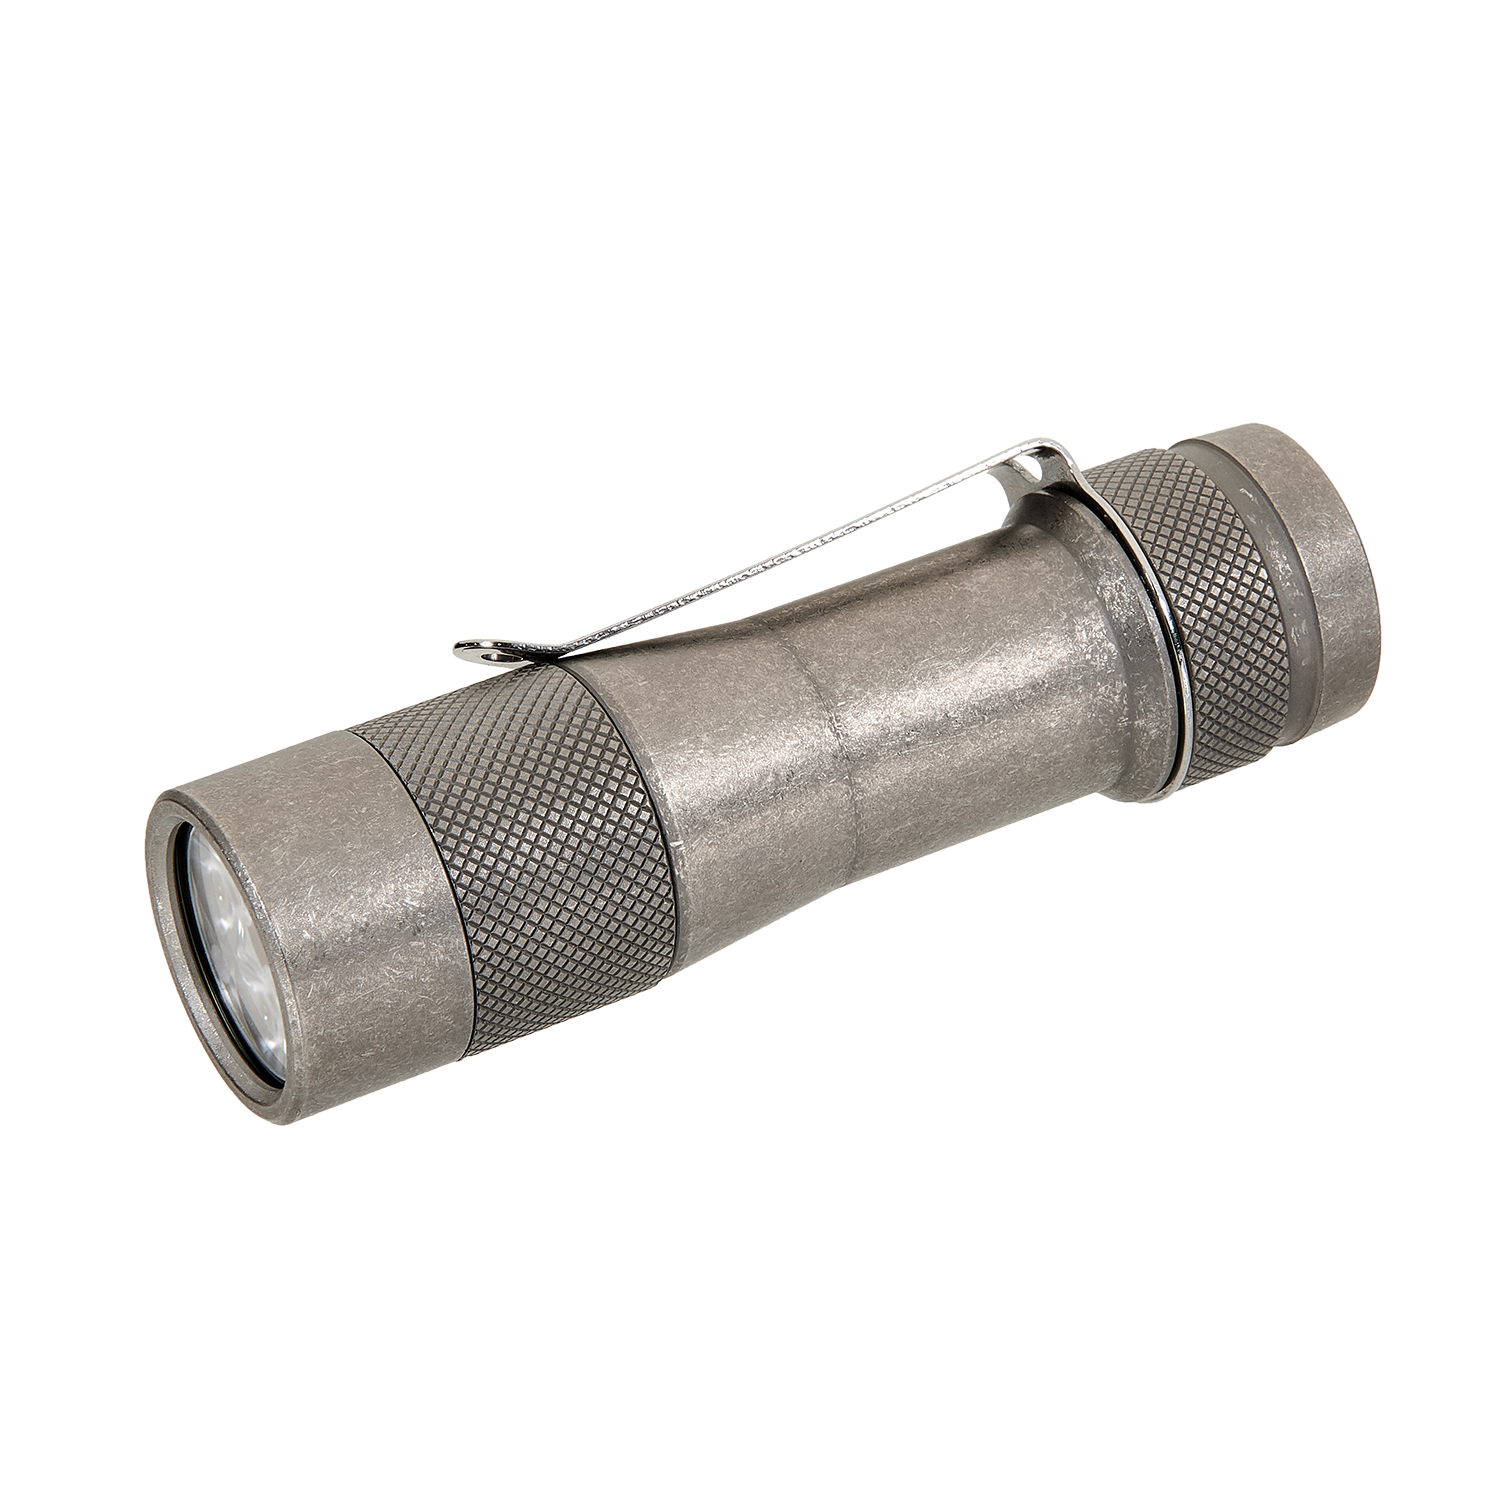 Lumintop FW3A Titanium (Stonewashed) LED Flashlight